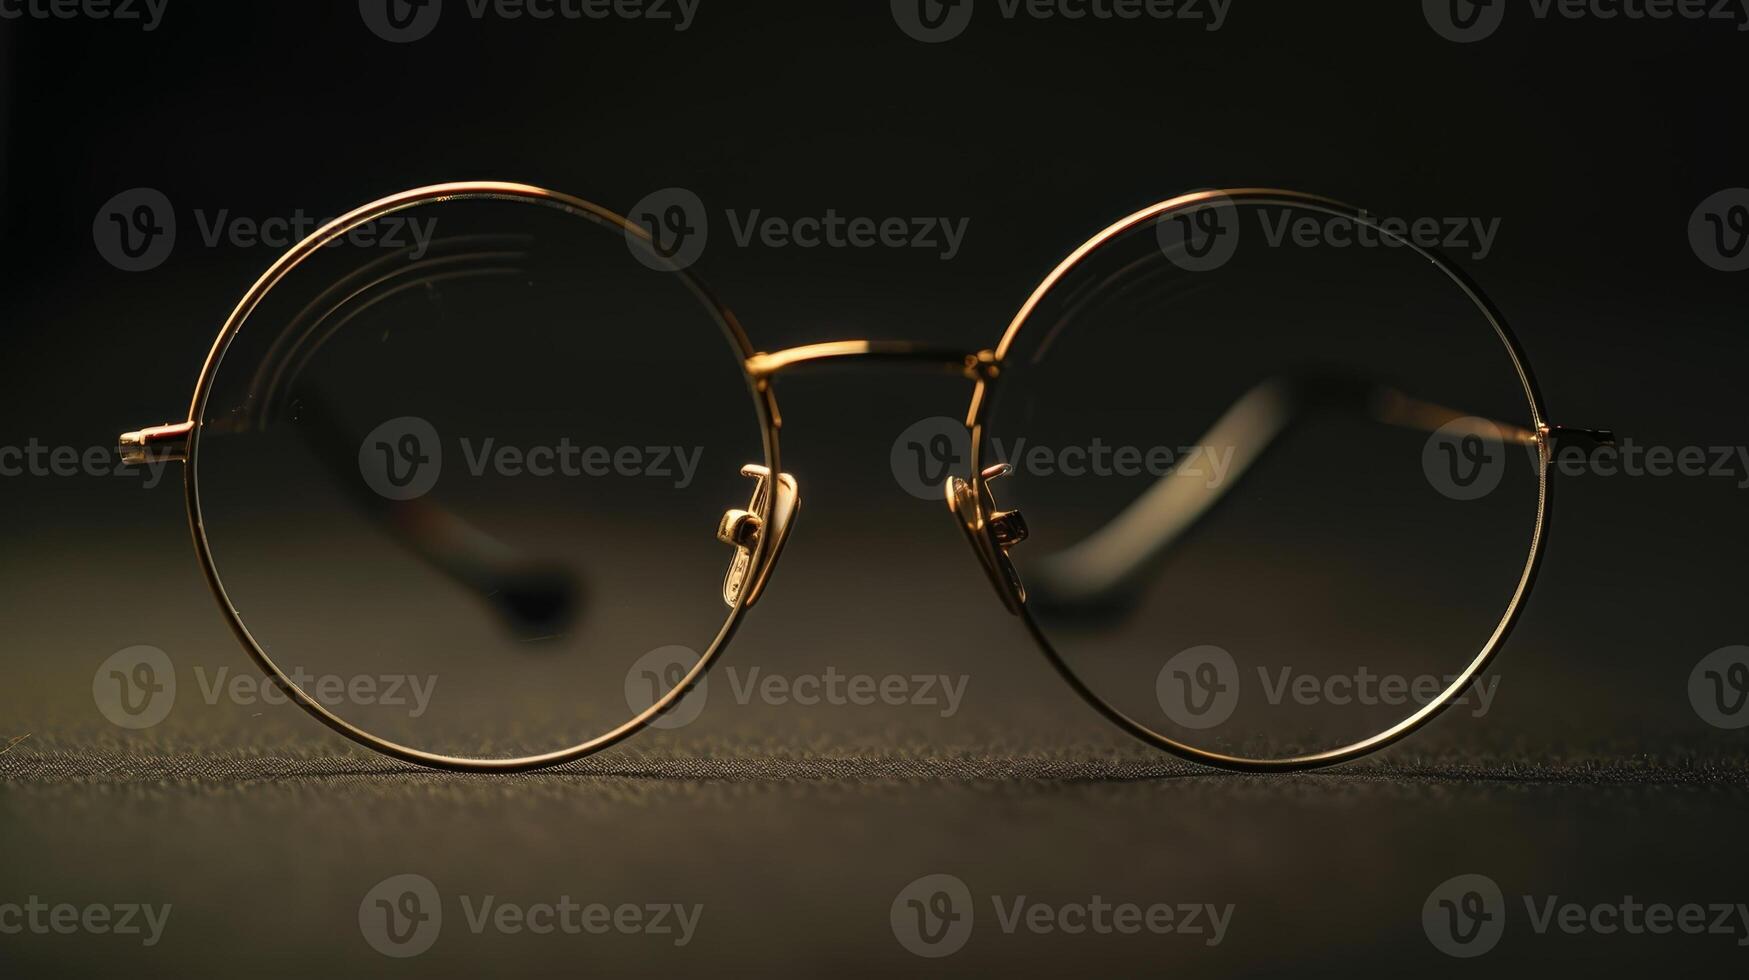 en par av tunn guld trådramad glasögon utstrålar ett luft av elegans och förfining foto